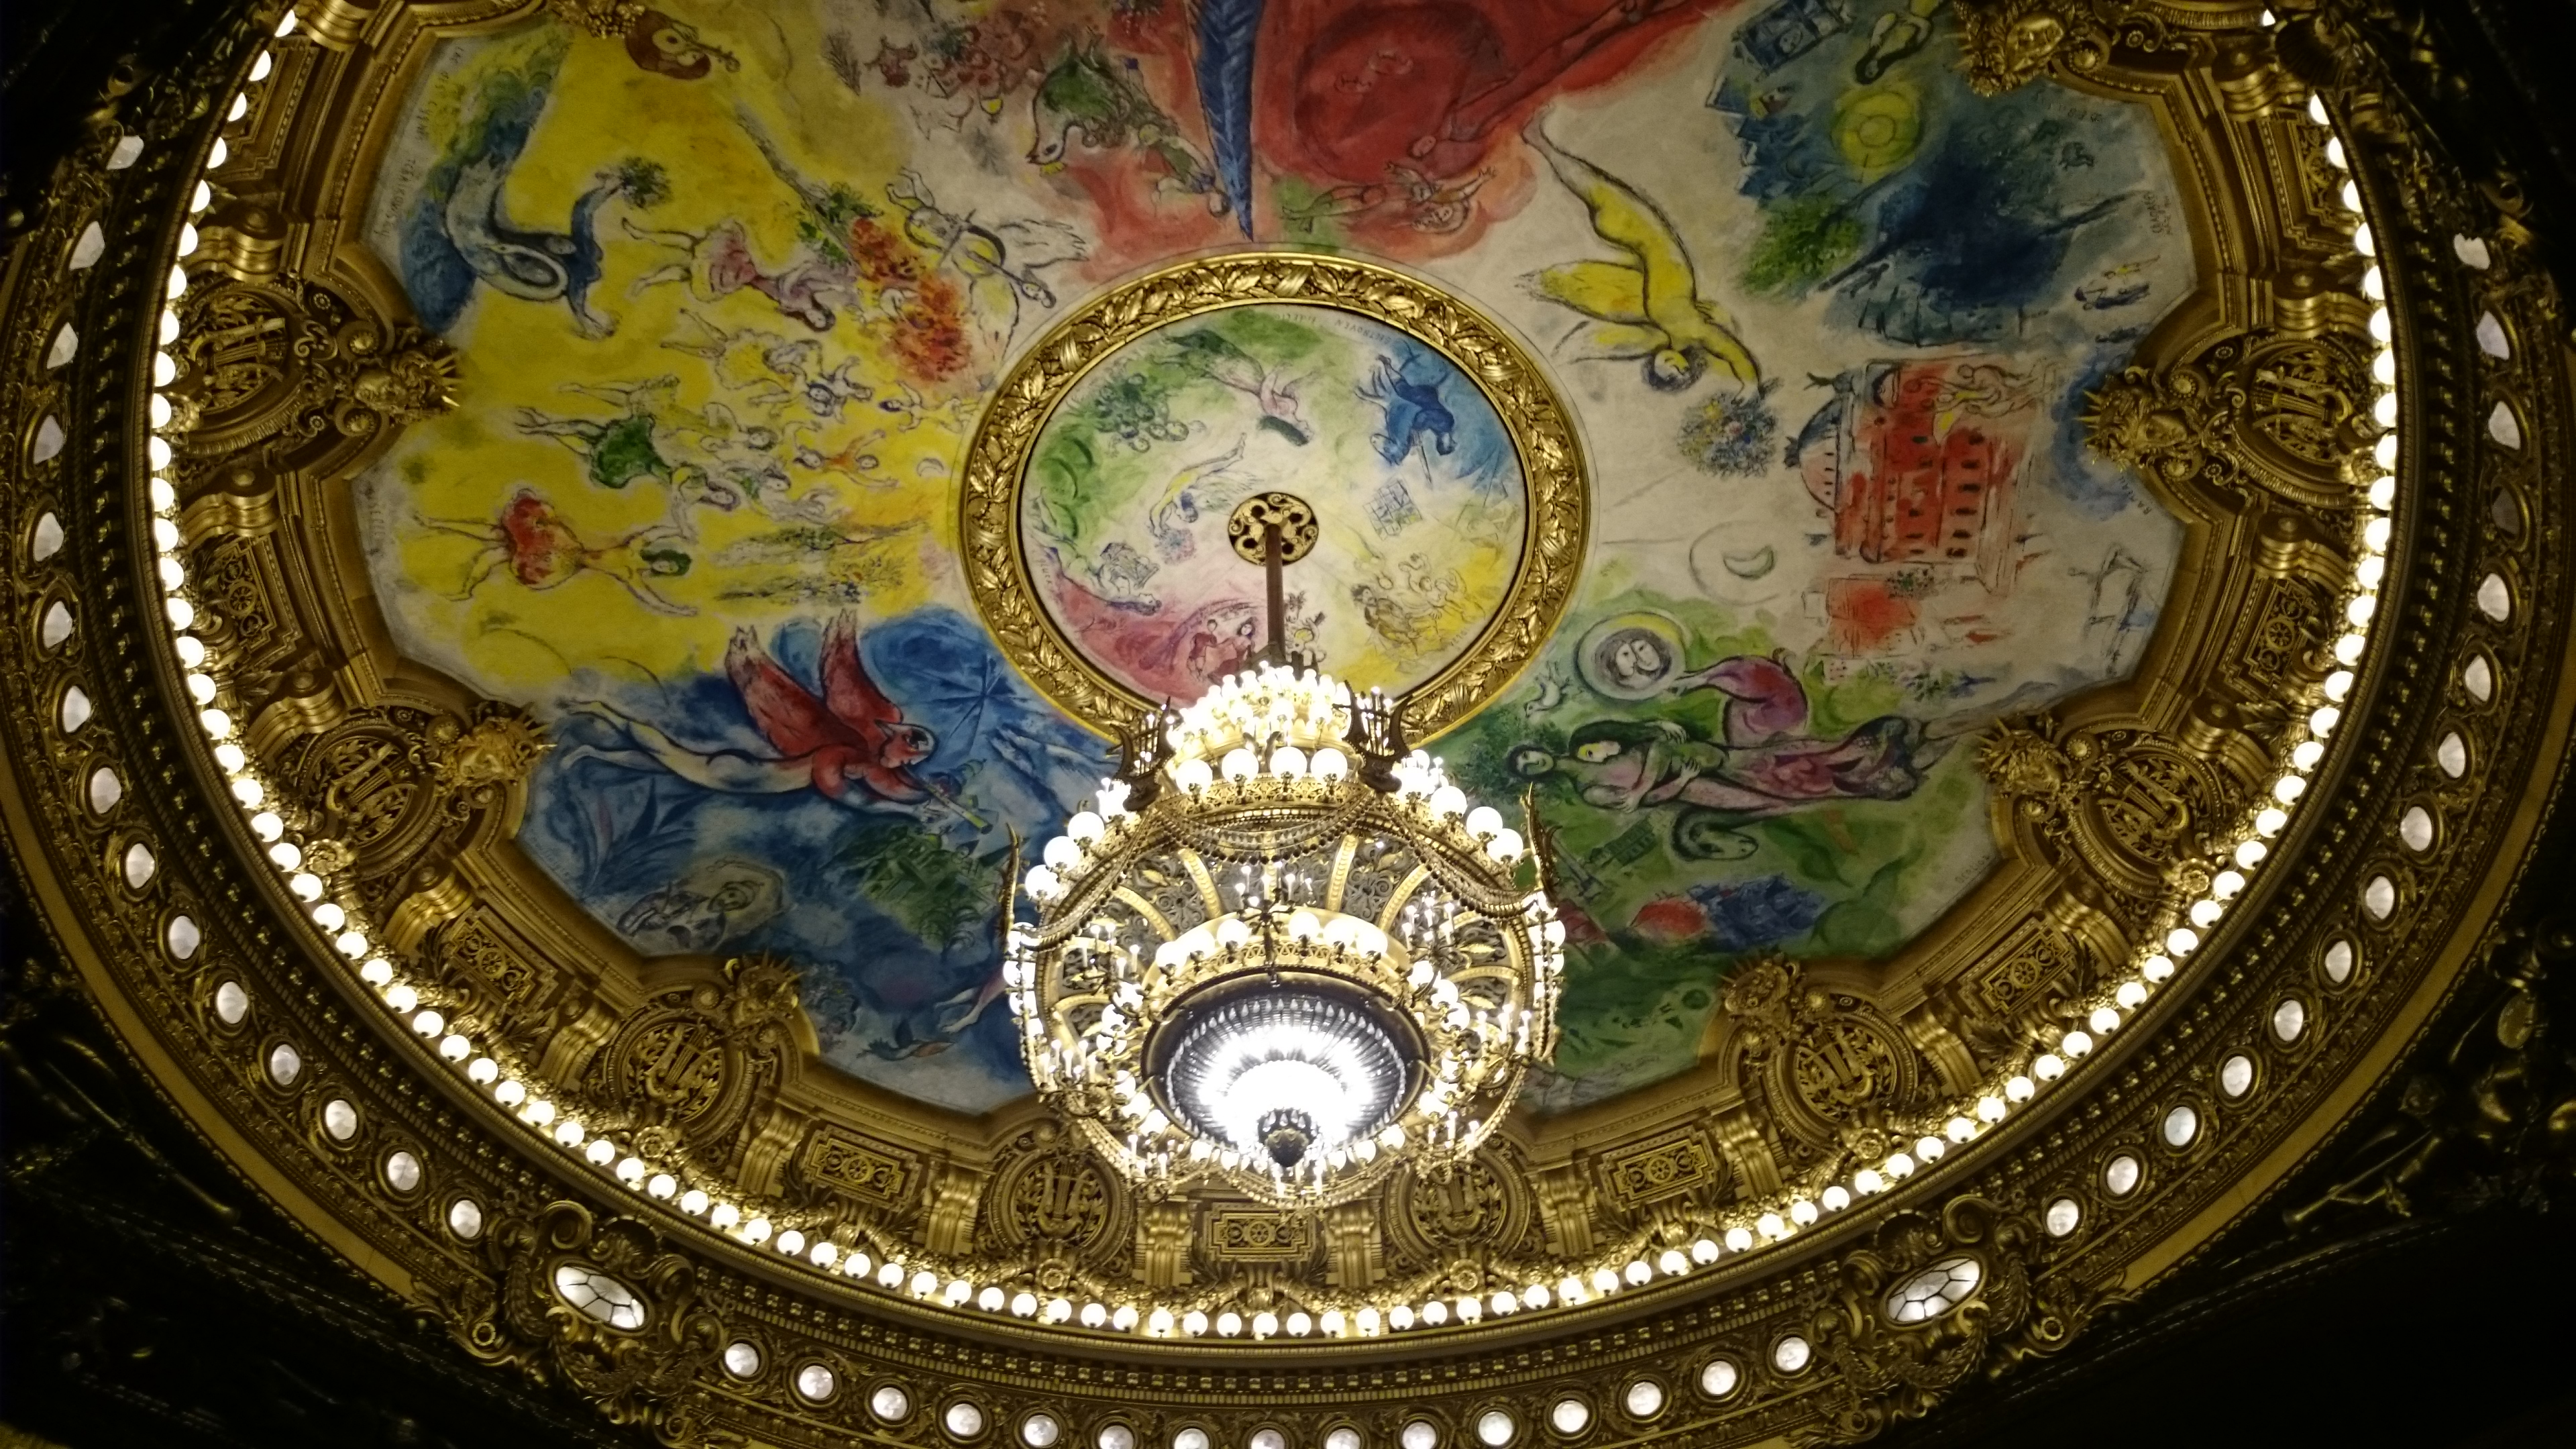 dsc 1025 - Una visita a la Opera de Paris (Palais Garnier)